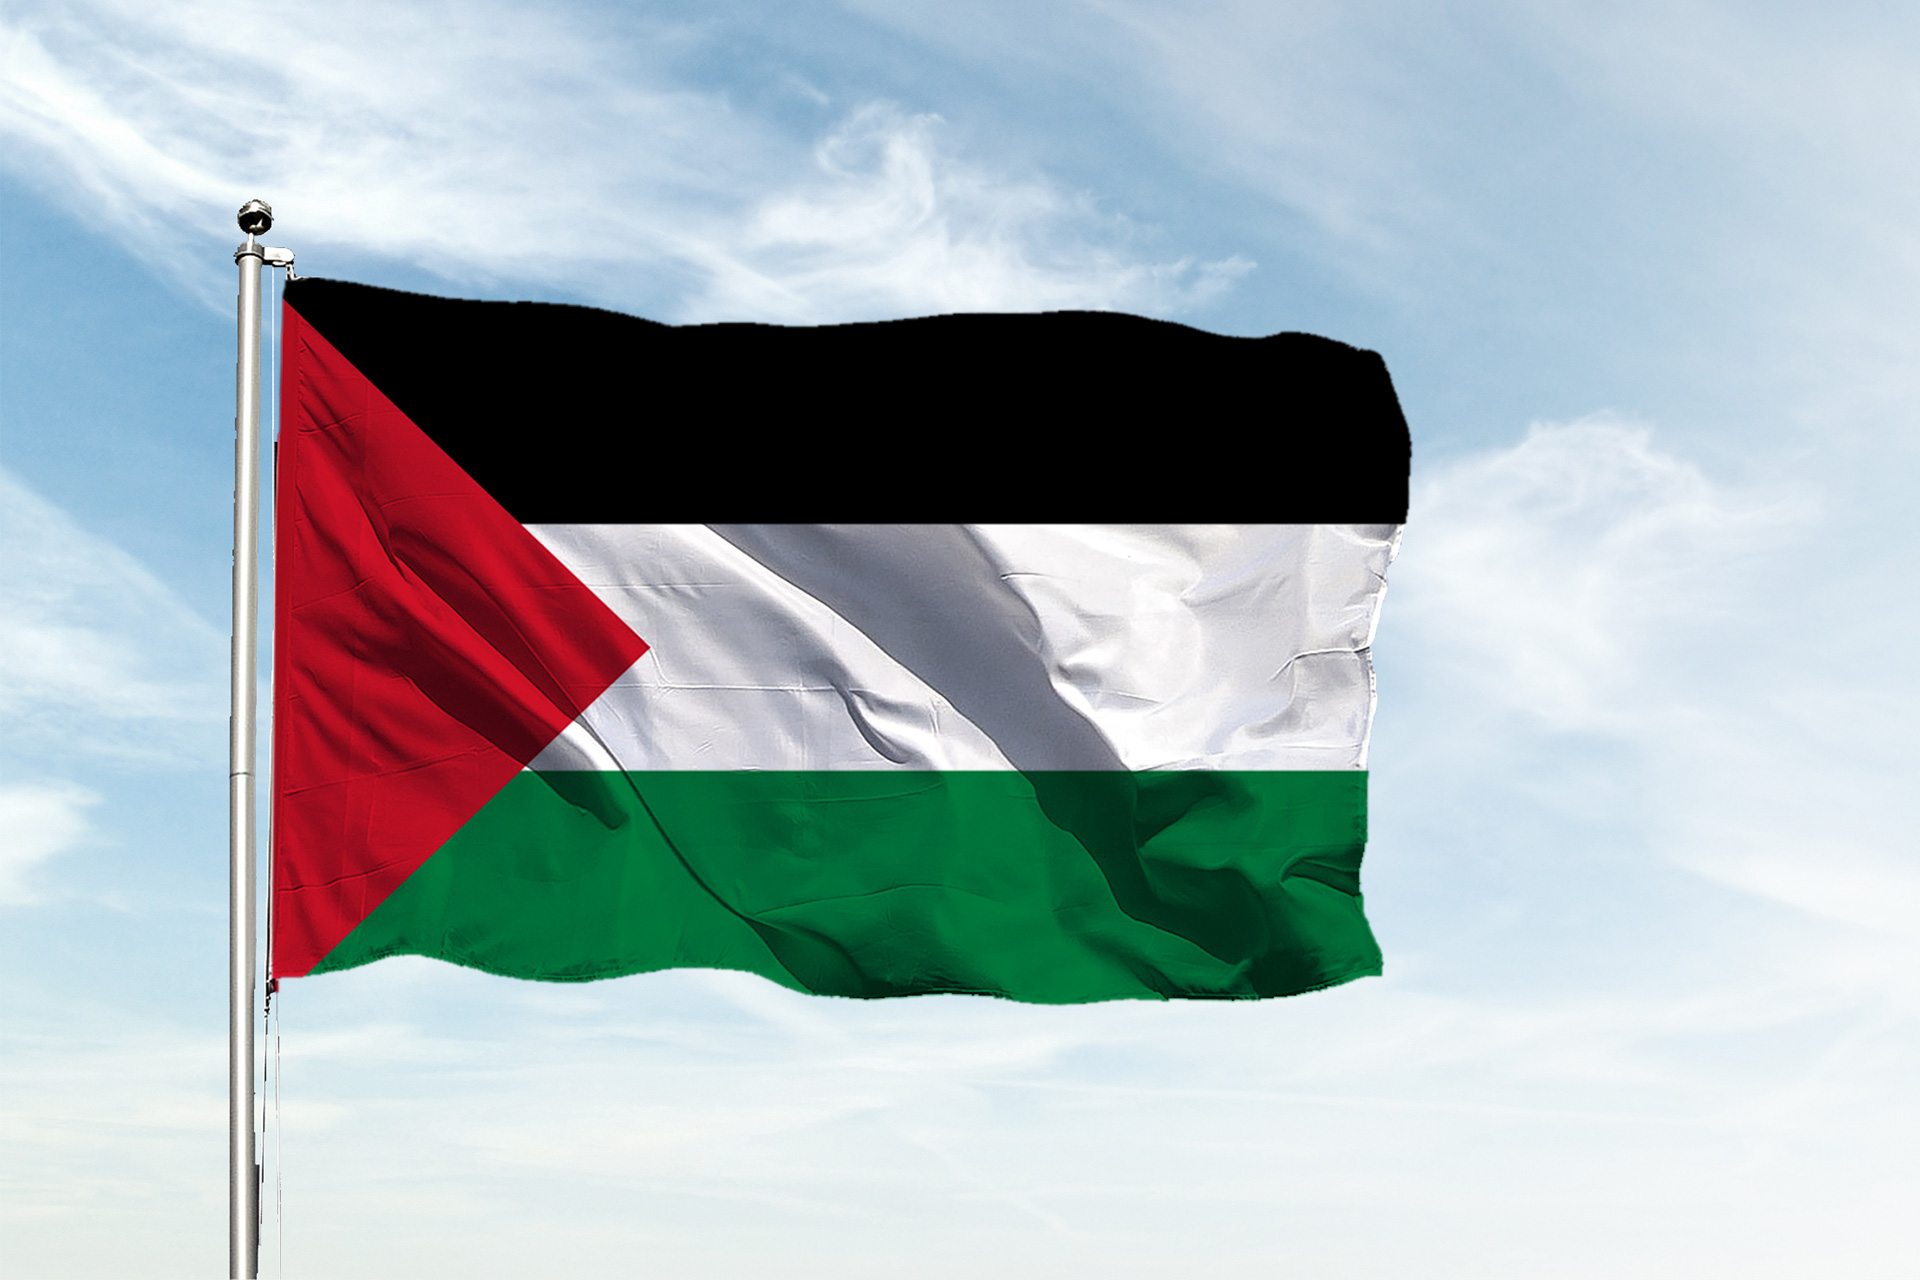 تفاؤل بشأن الاعتراف بدولة فلسطينية في الأمم المتحدة | أخبار – البوكس نيوز